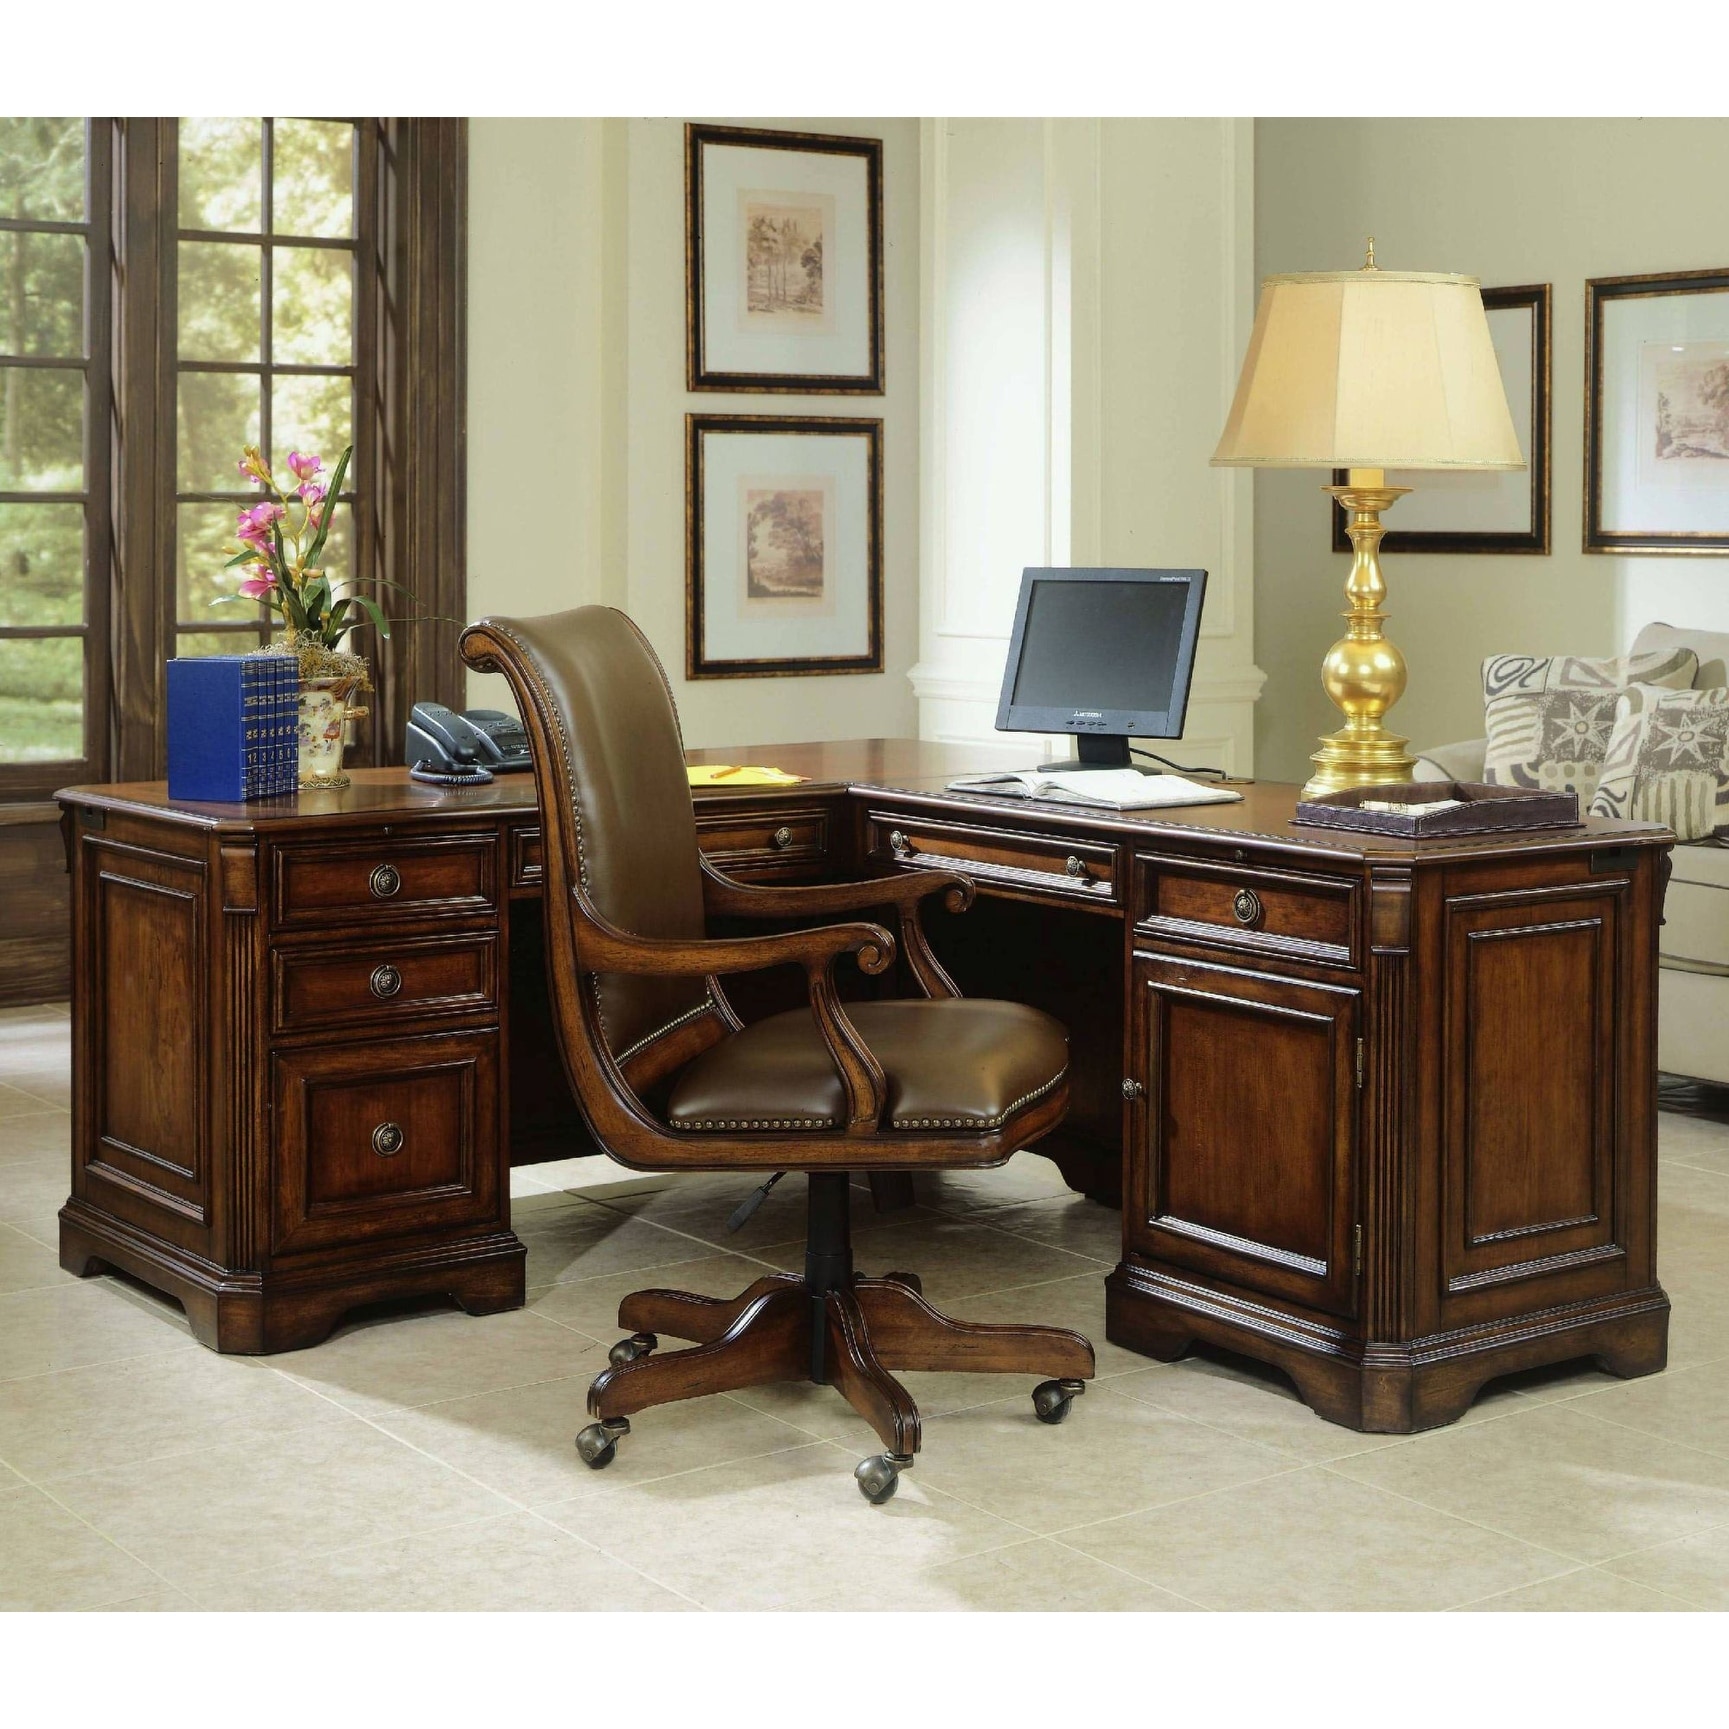 Shop Hooker Furniture 281 10 453 68 1 4 Wide Hardwood Executive